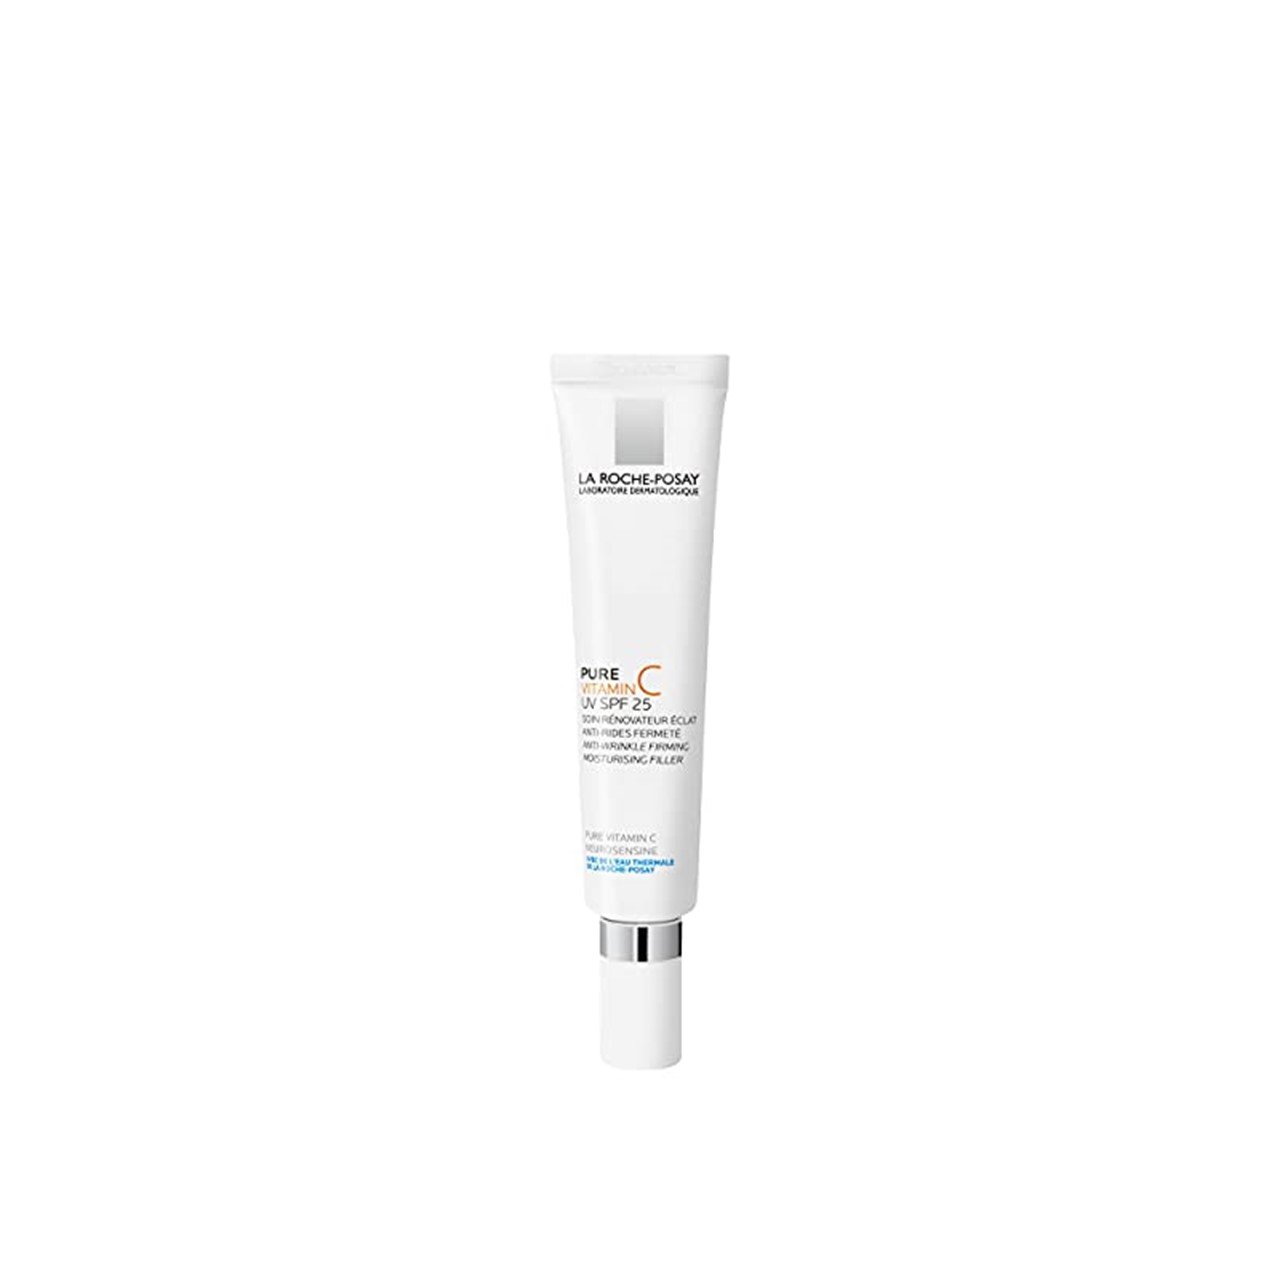 La Roche-Posay Pure Vitamin C UV Anti-Wrinkle Filler SPF25 40ml (1.35fl oz)